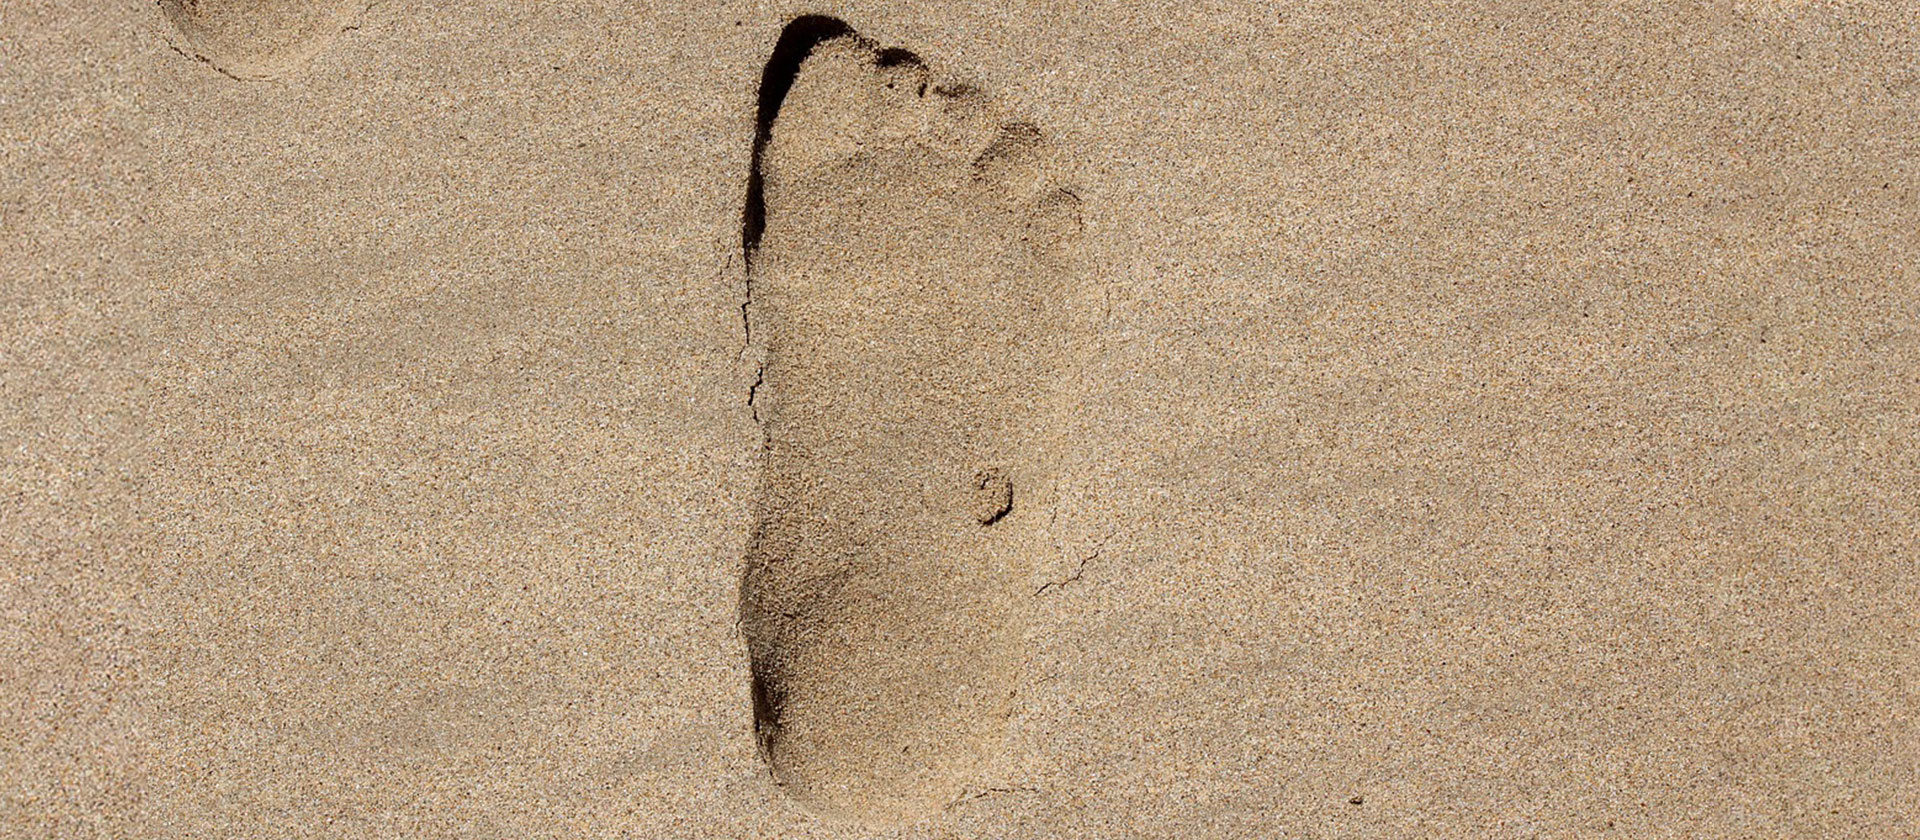 Fußabdruck im Sand | Bildquelle: Pixabay